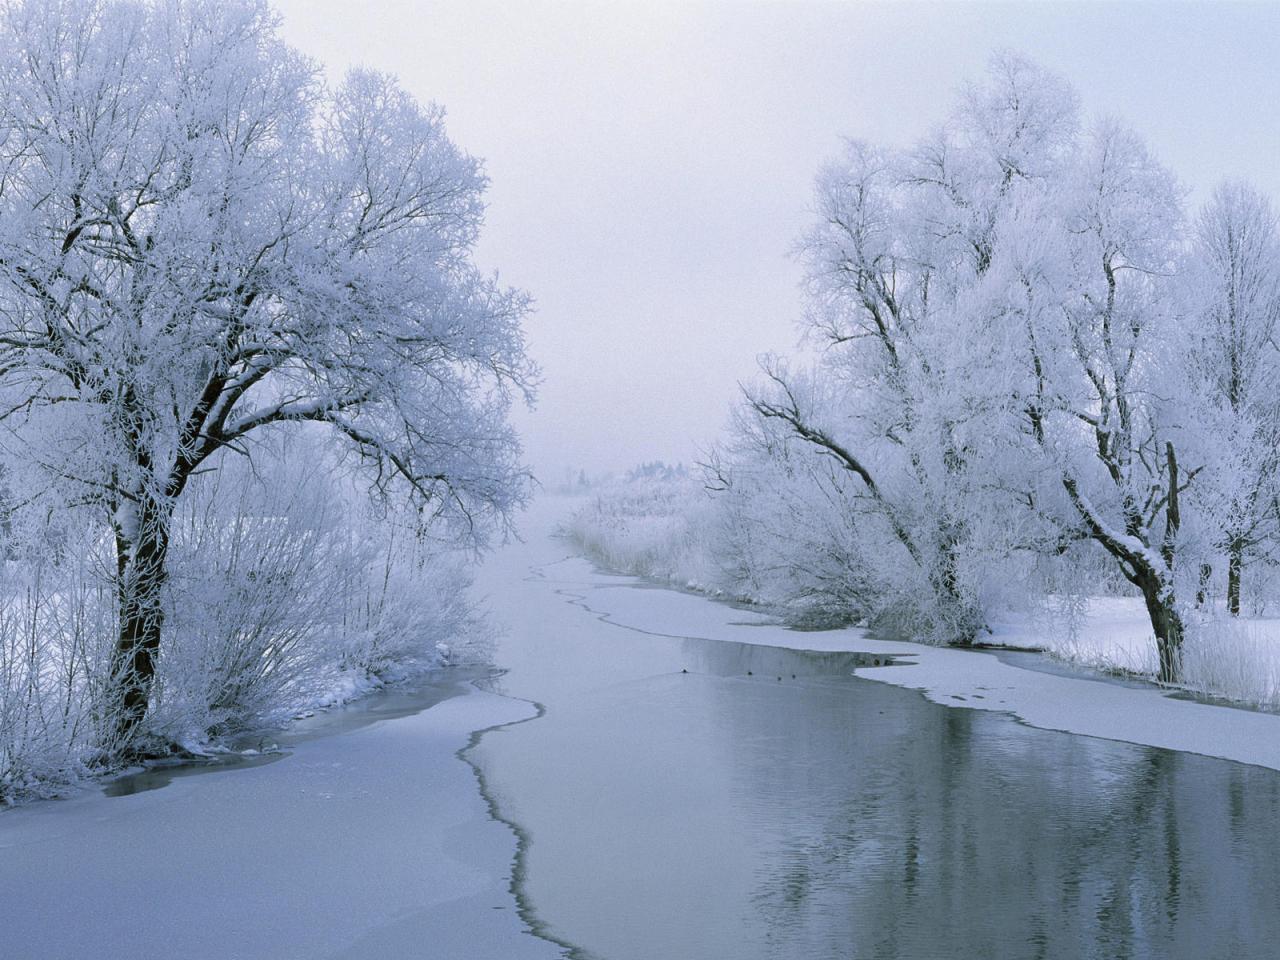 обои Река среди снежных лесов фото